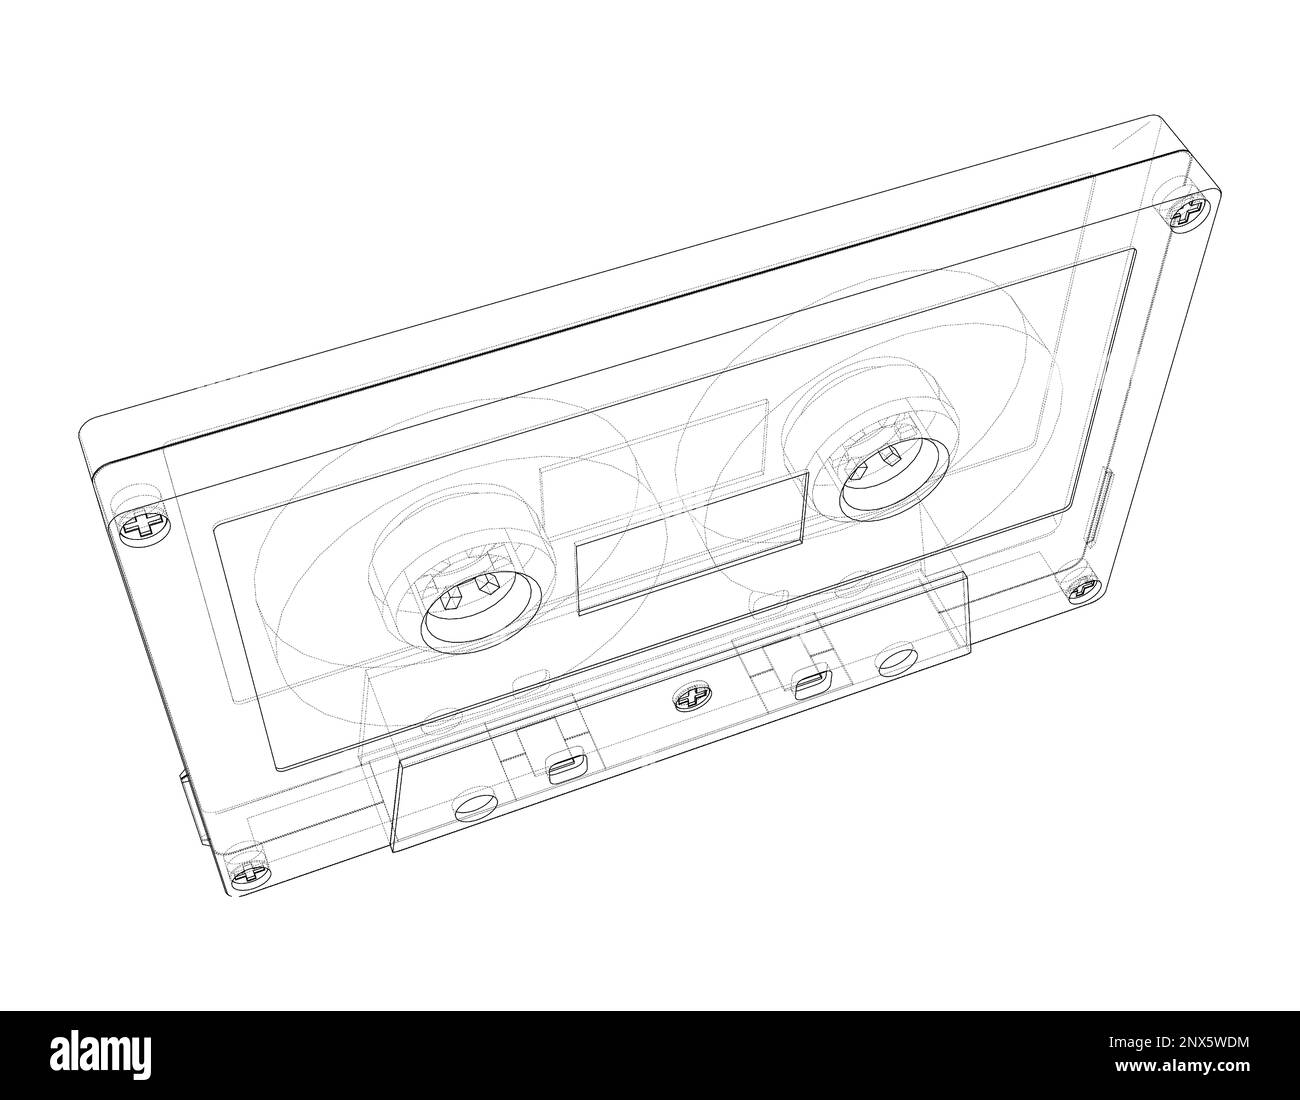 Cassette tape. 3d illustration Stock Photo